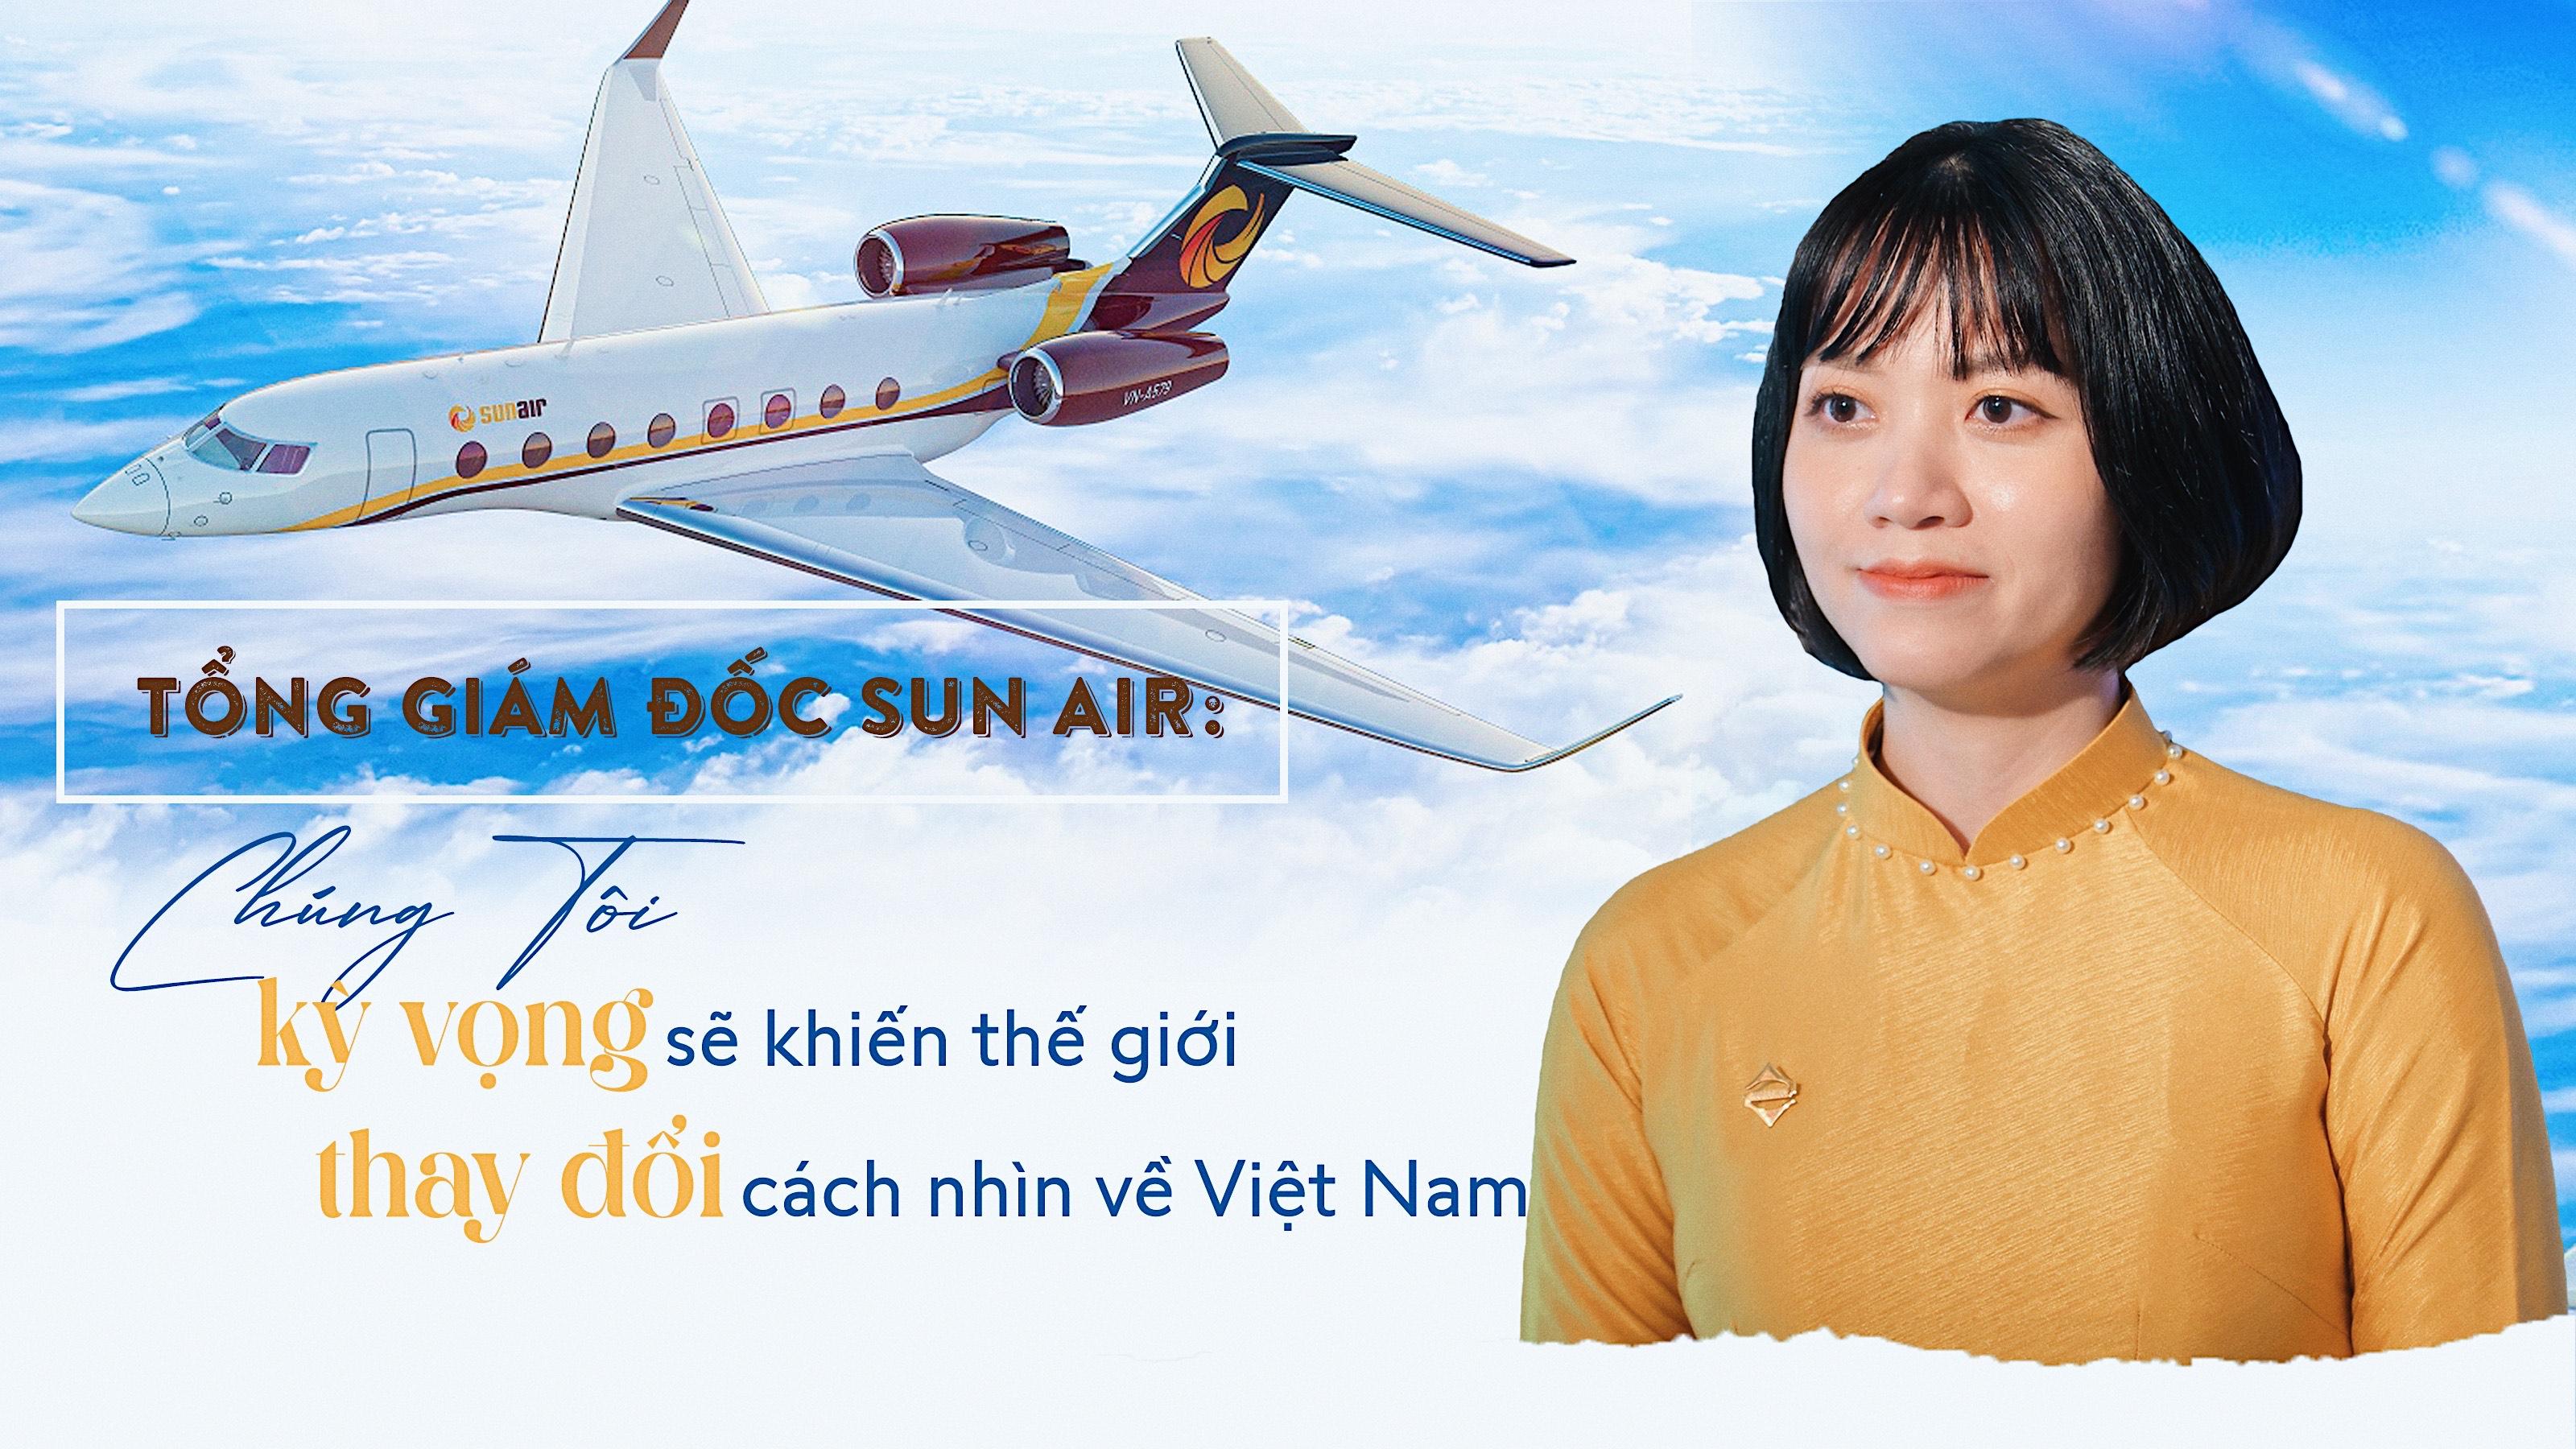 Tổng Giám đốc Sun Air: 'Chúng tôi kỳ vọng sẽ khiến thế giới thay đổi cách nhìn về Việt Nam'